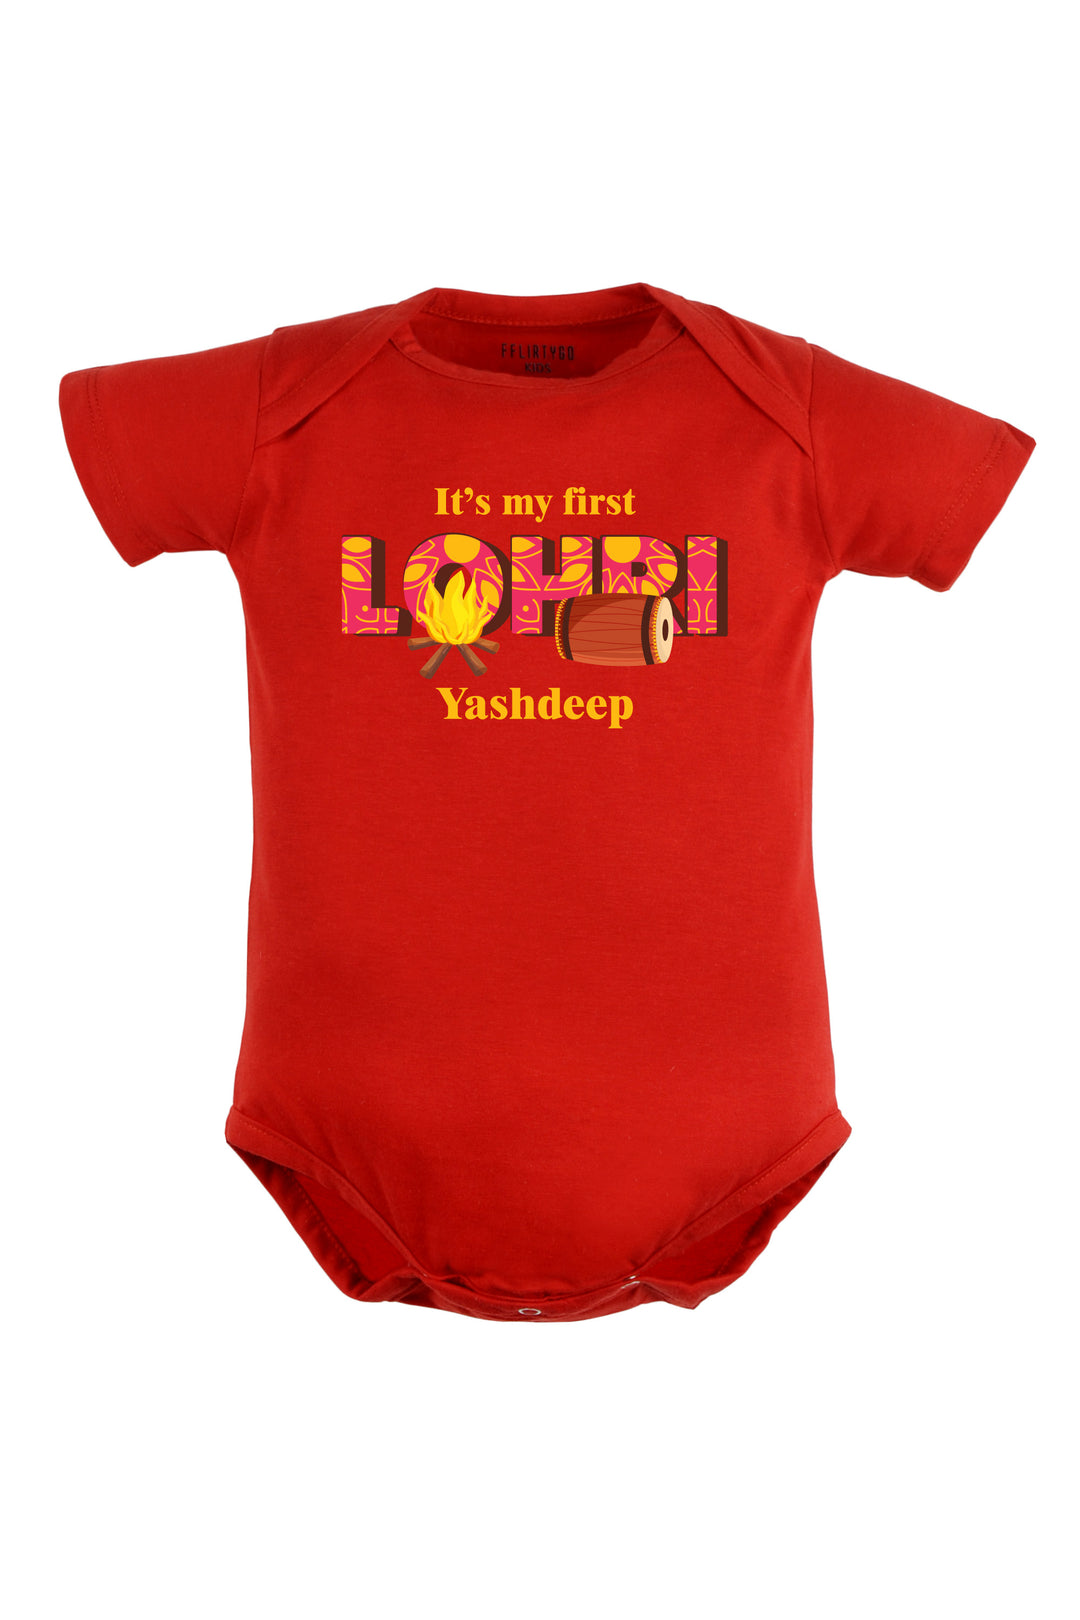 It's My First Lohri (Motif) Baby Romper | Onesies w/ Custom Name